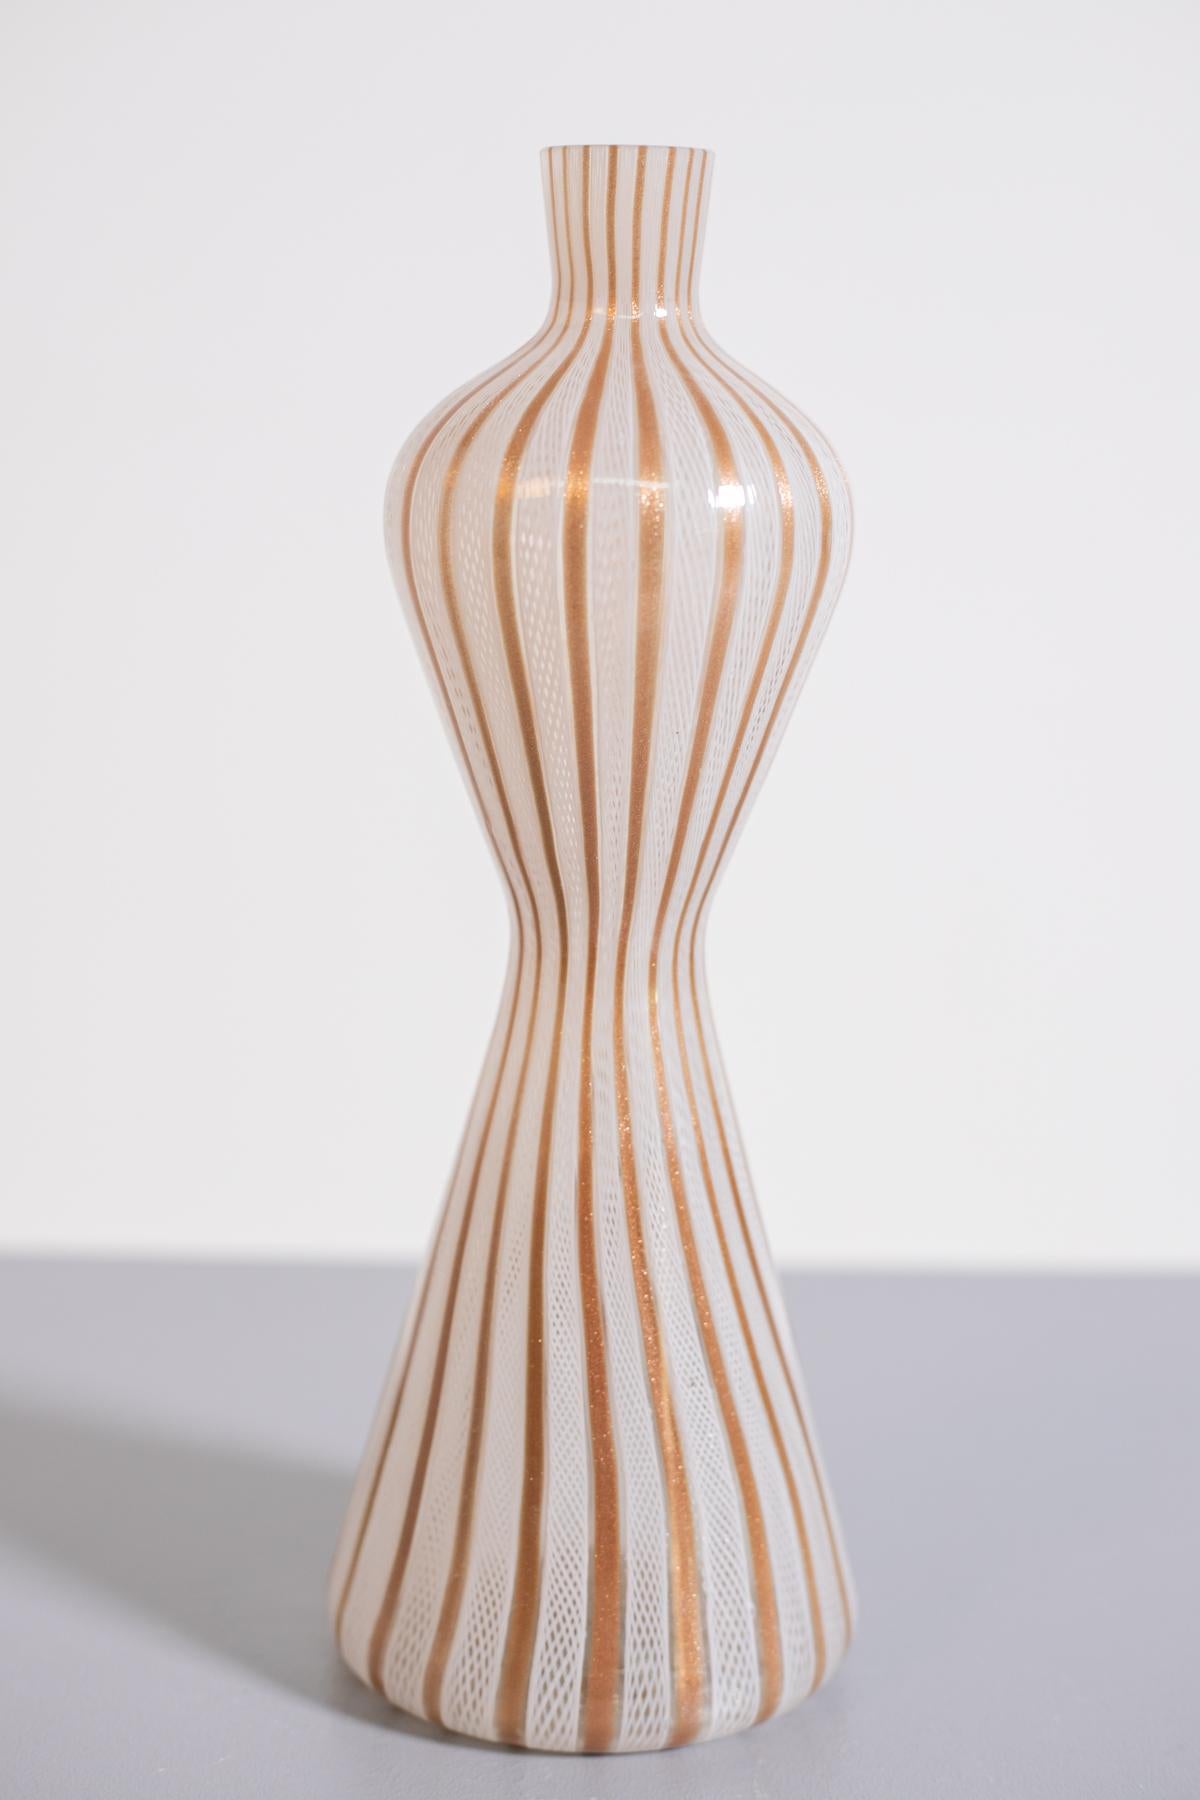 Italian Vase in Murano glass by Paolo Venini, 1950s